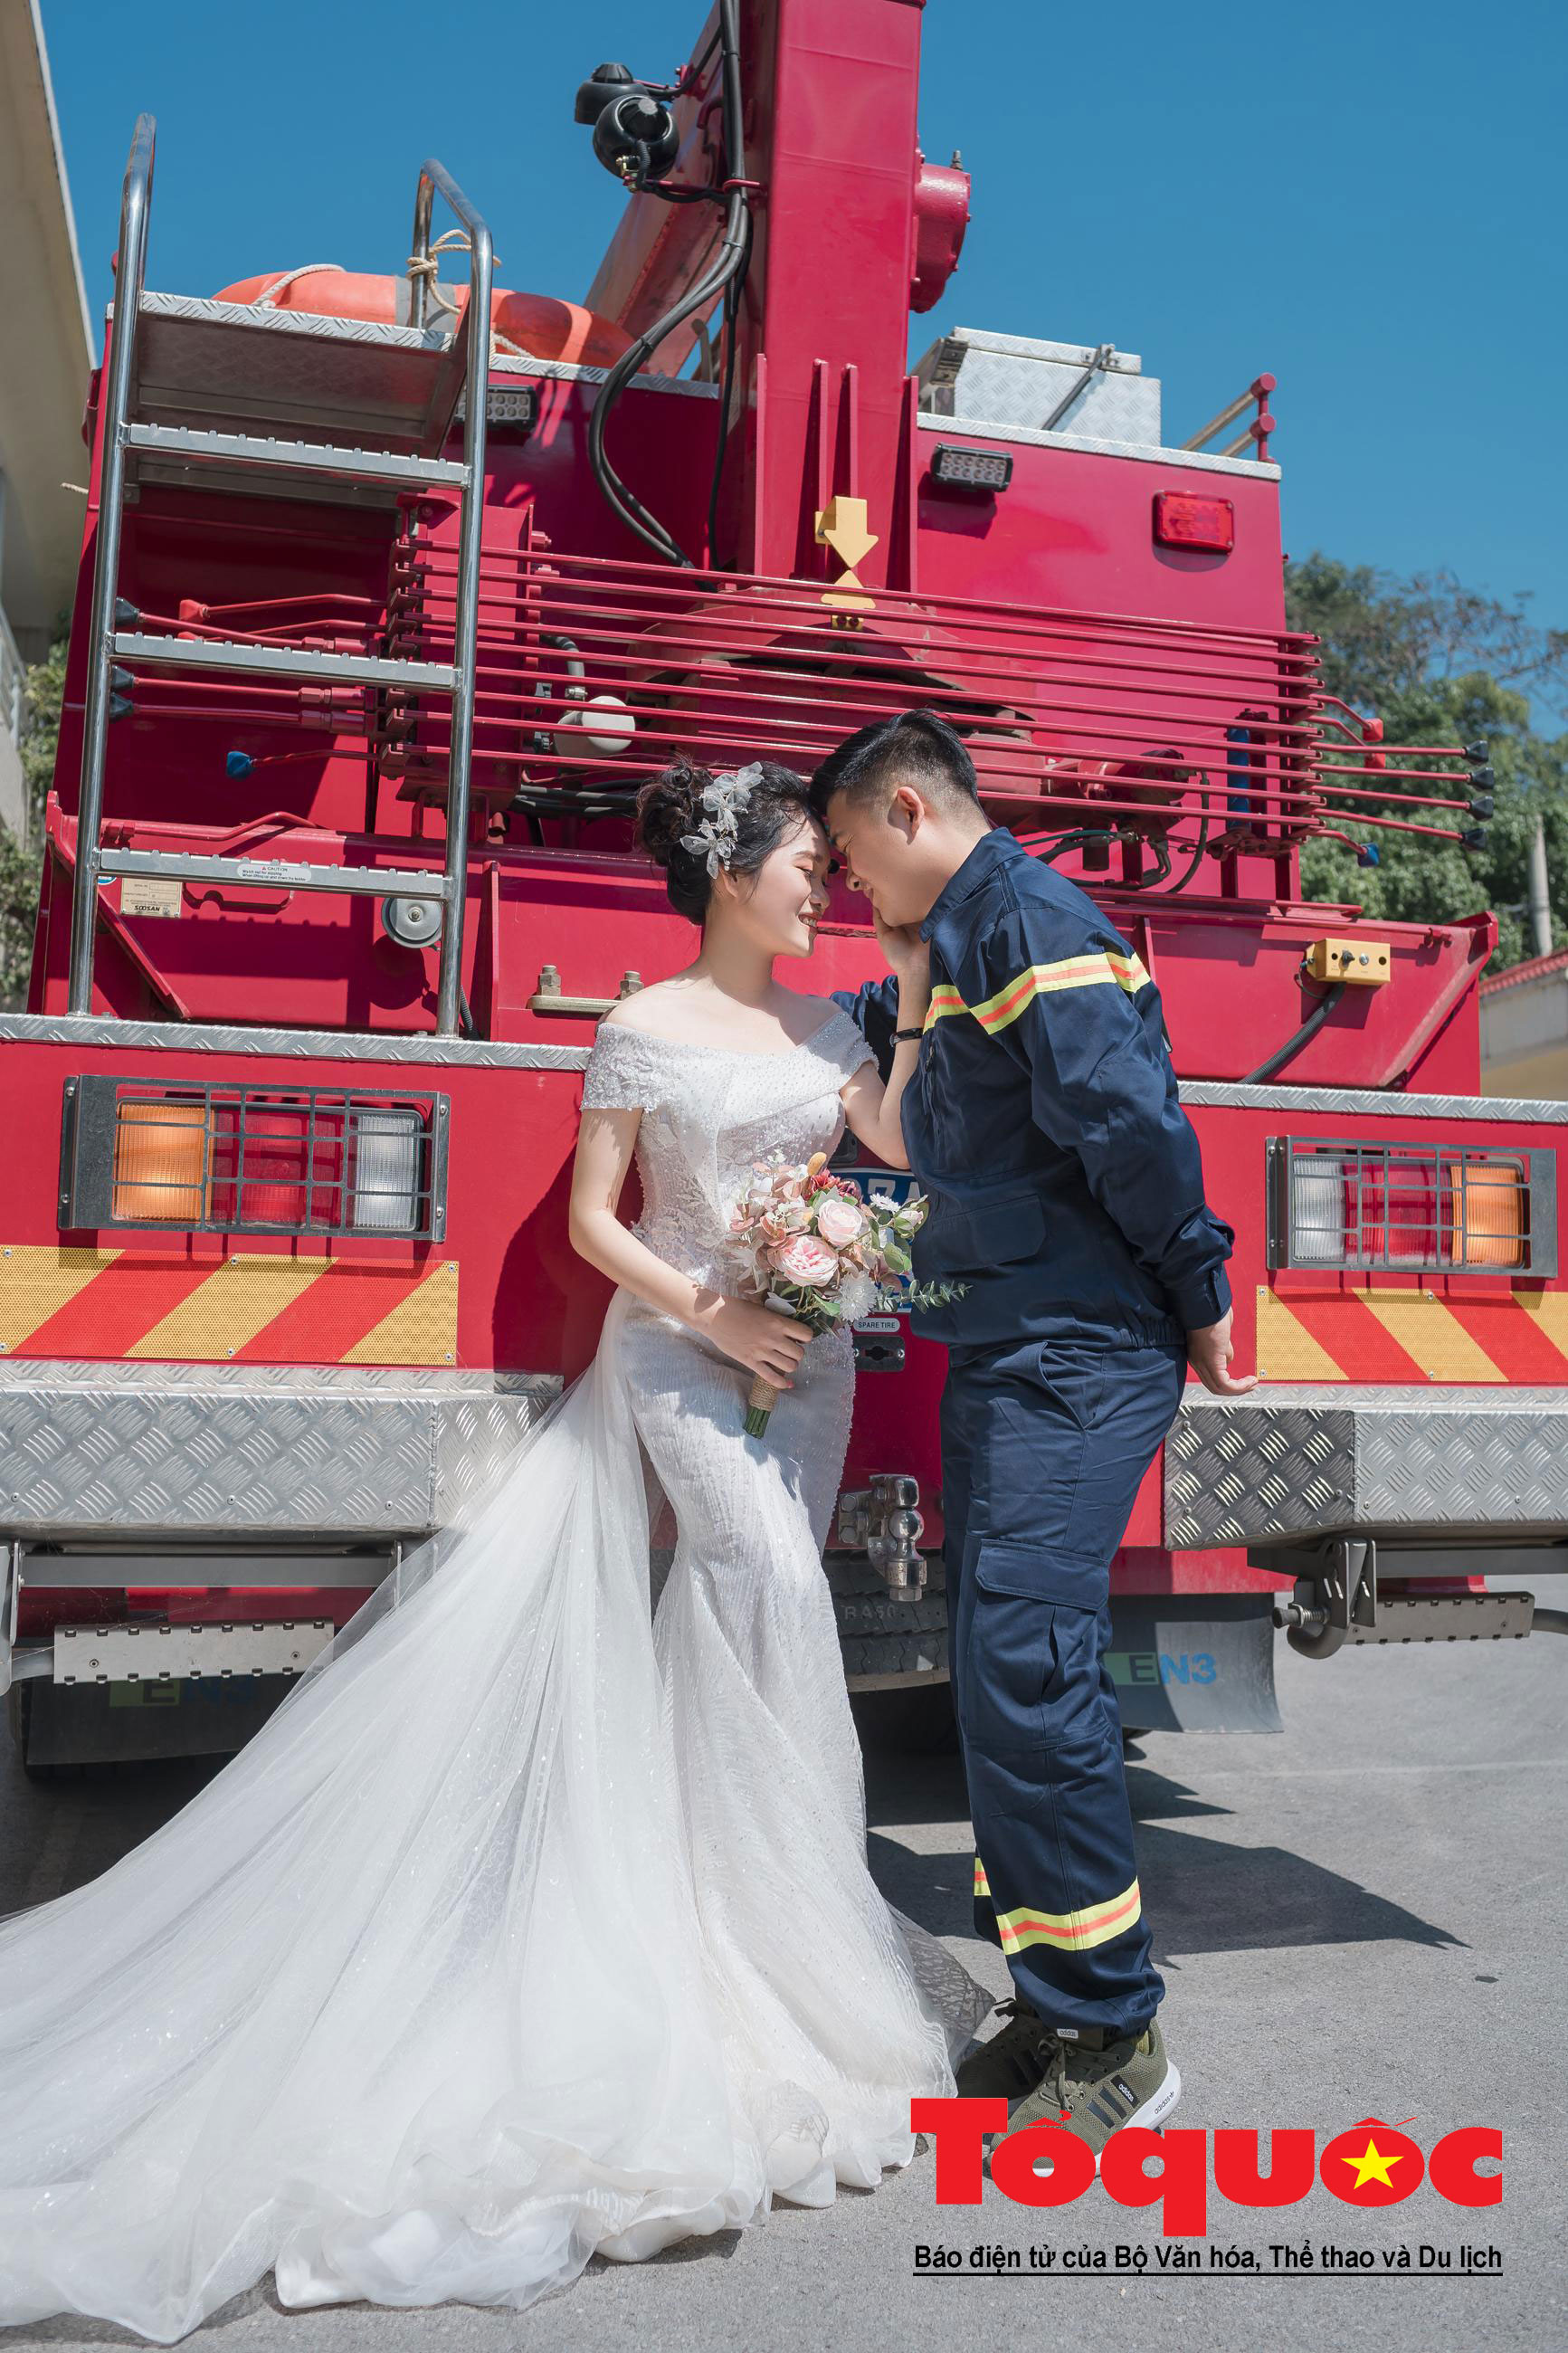 Bộ ảnh cưới Trung Quốc ngầu này sẽ là một trải nghiệm thú vị cho những người yêu thích phong cách hiện đại và cá tính. Hãy xem những bức ảnh độc đáo này và thưởng thức sự khéo léo của những nhà thiết kế.